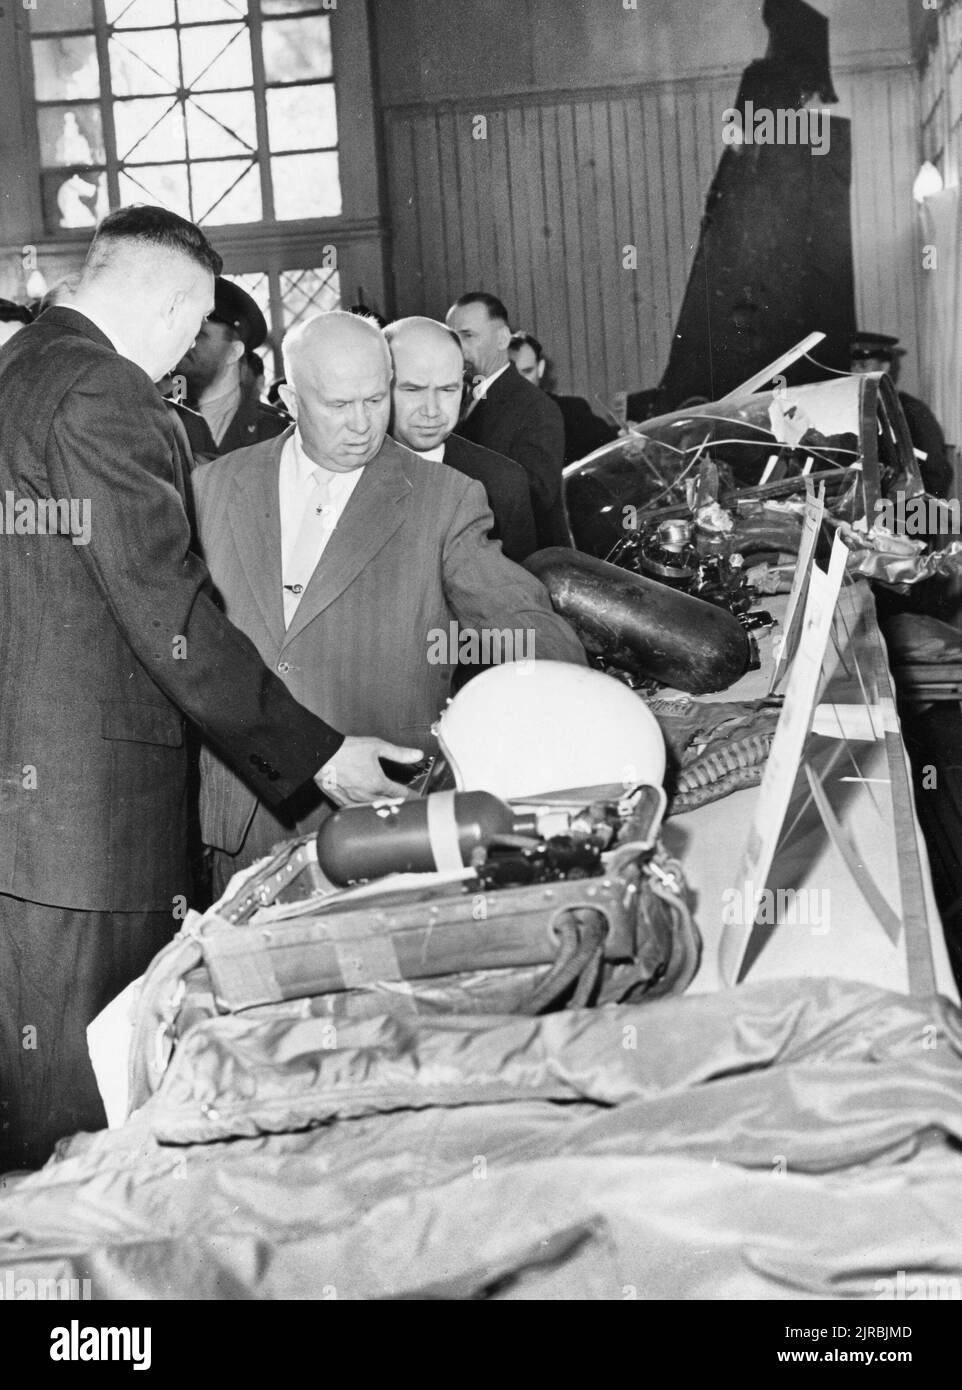 Esta fotografía representa al primer ministro soviético Nikita Krushchev viendo objetos recuperados de los restos del avión espía estadounidense U-2 Foto de stock